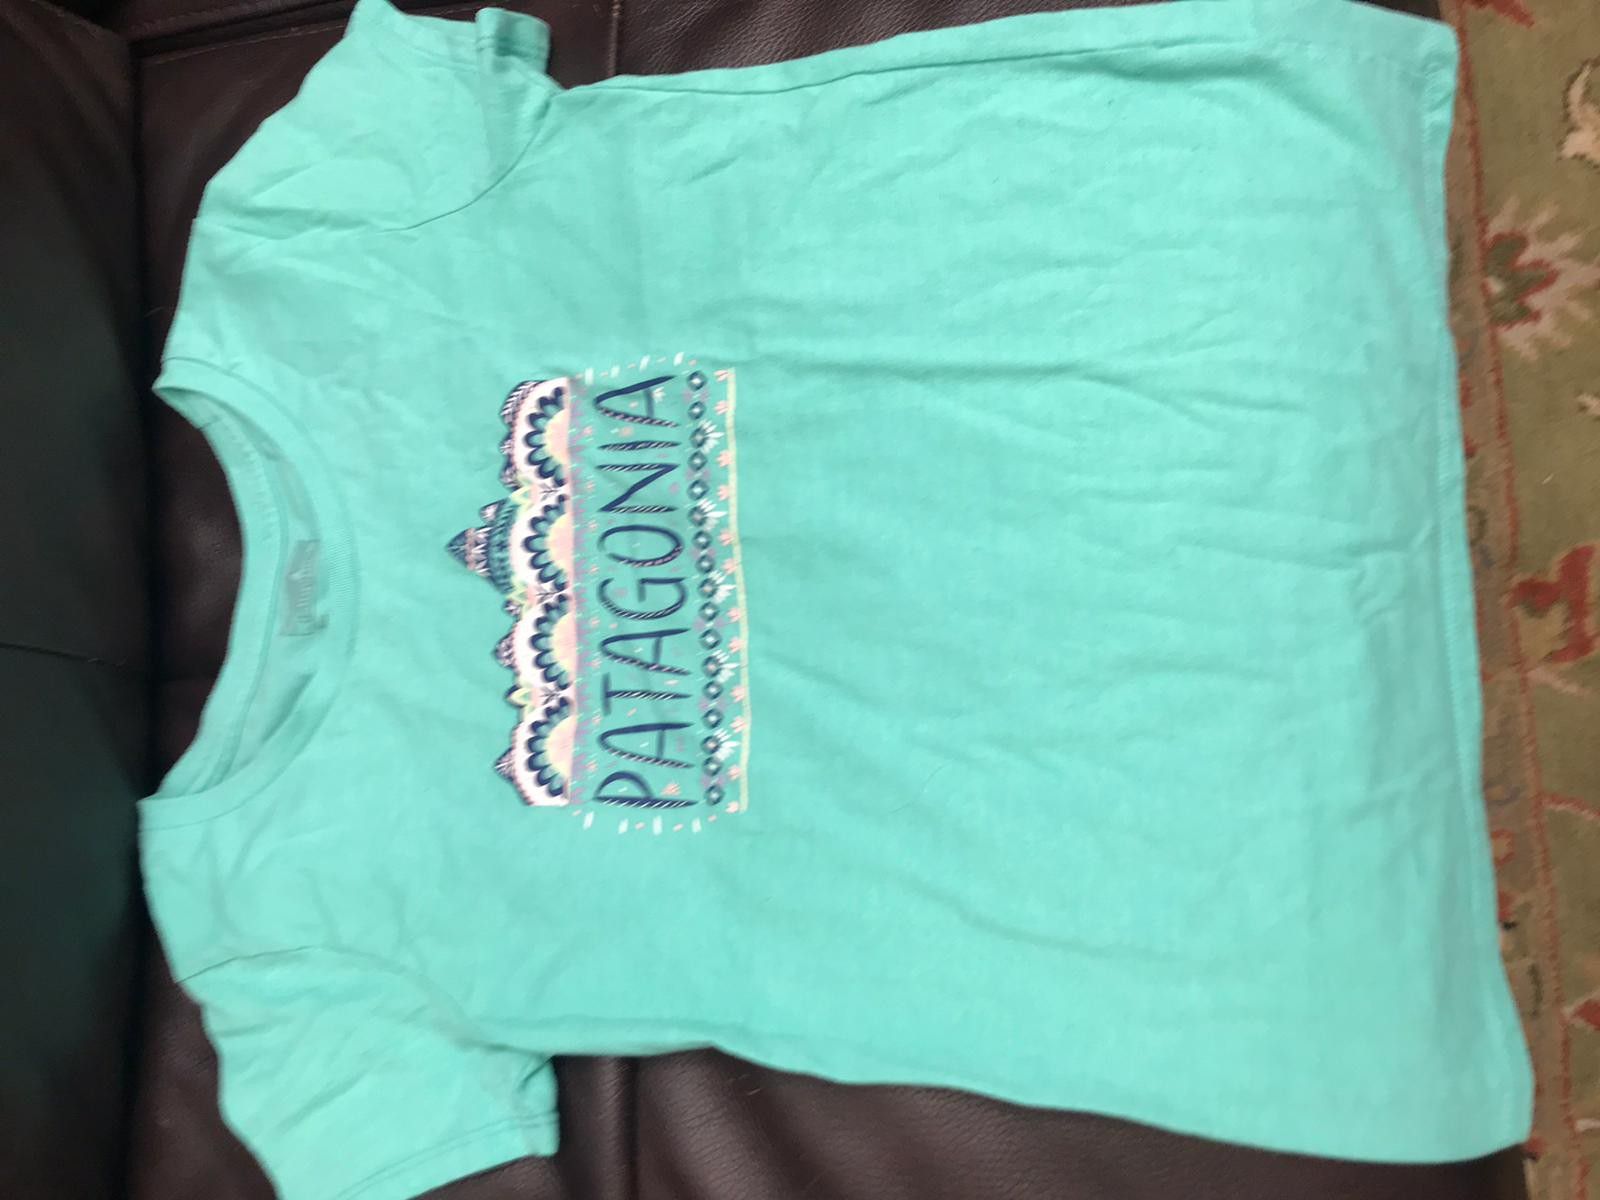 Patagonia t-shirt